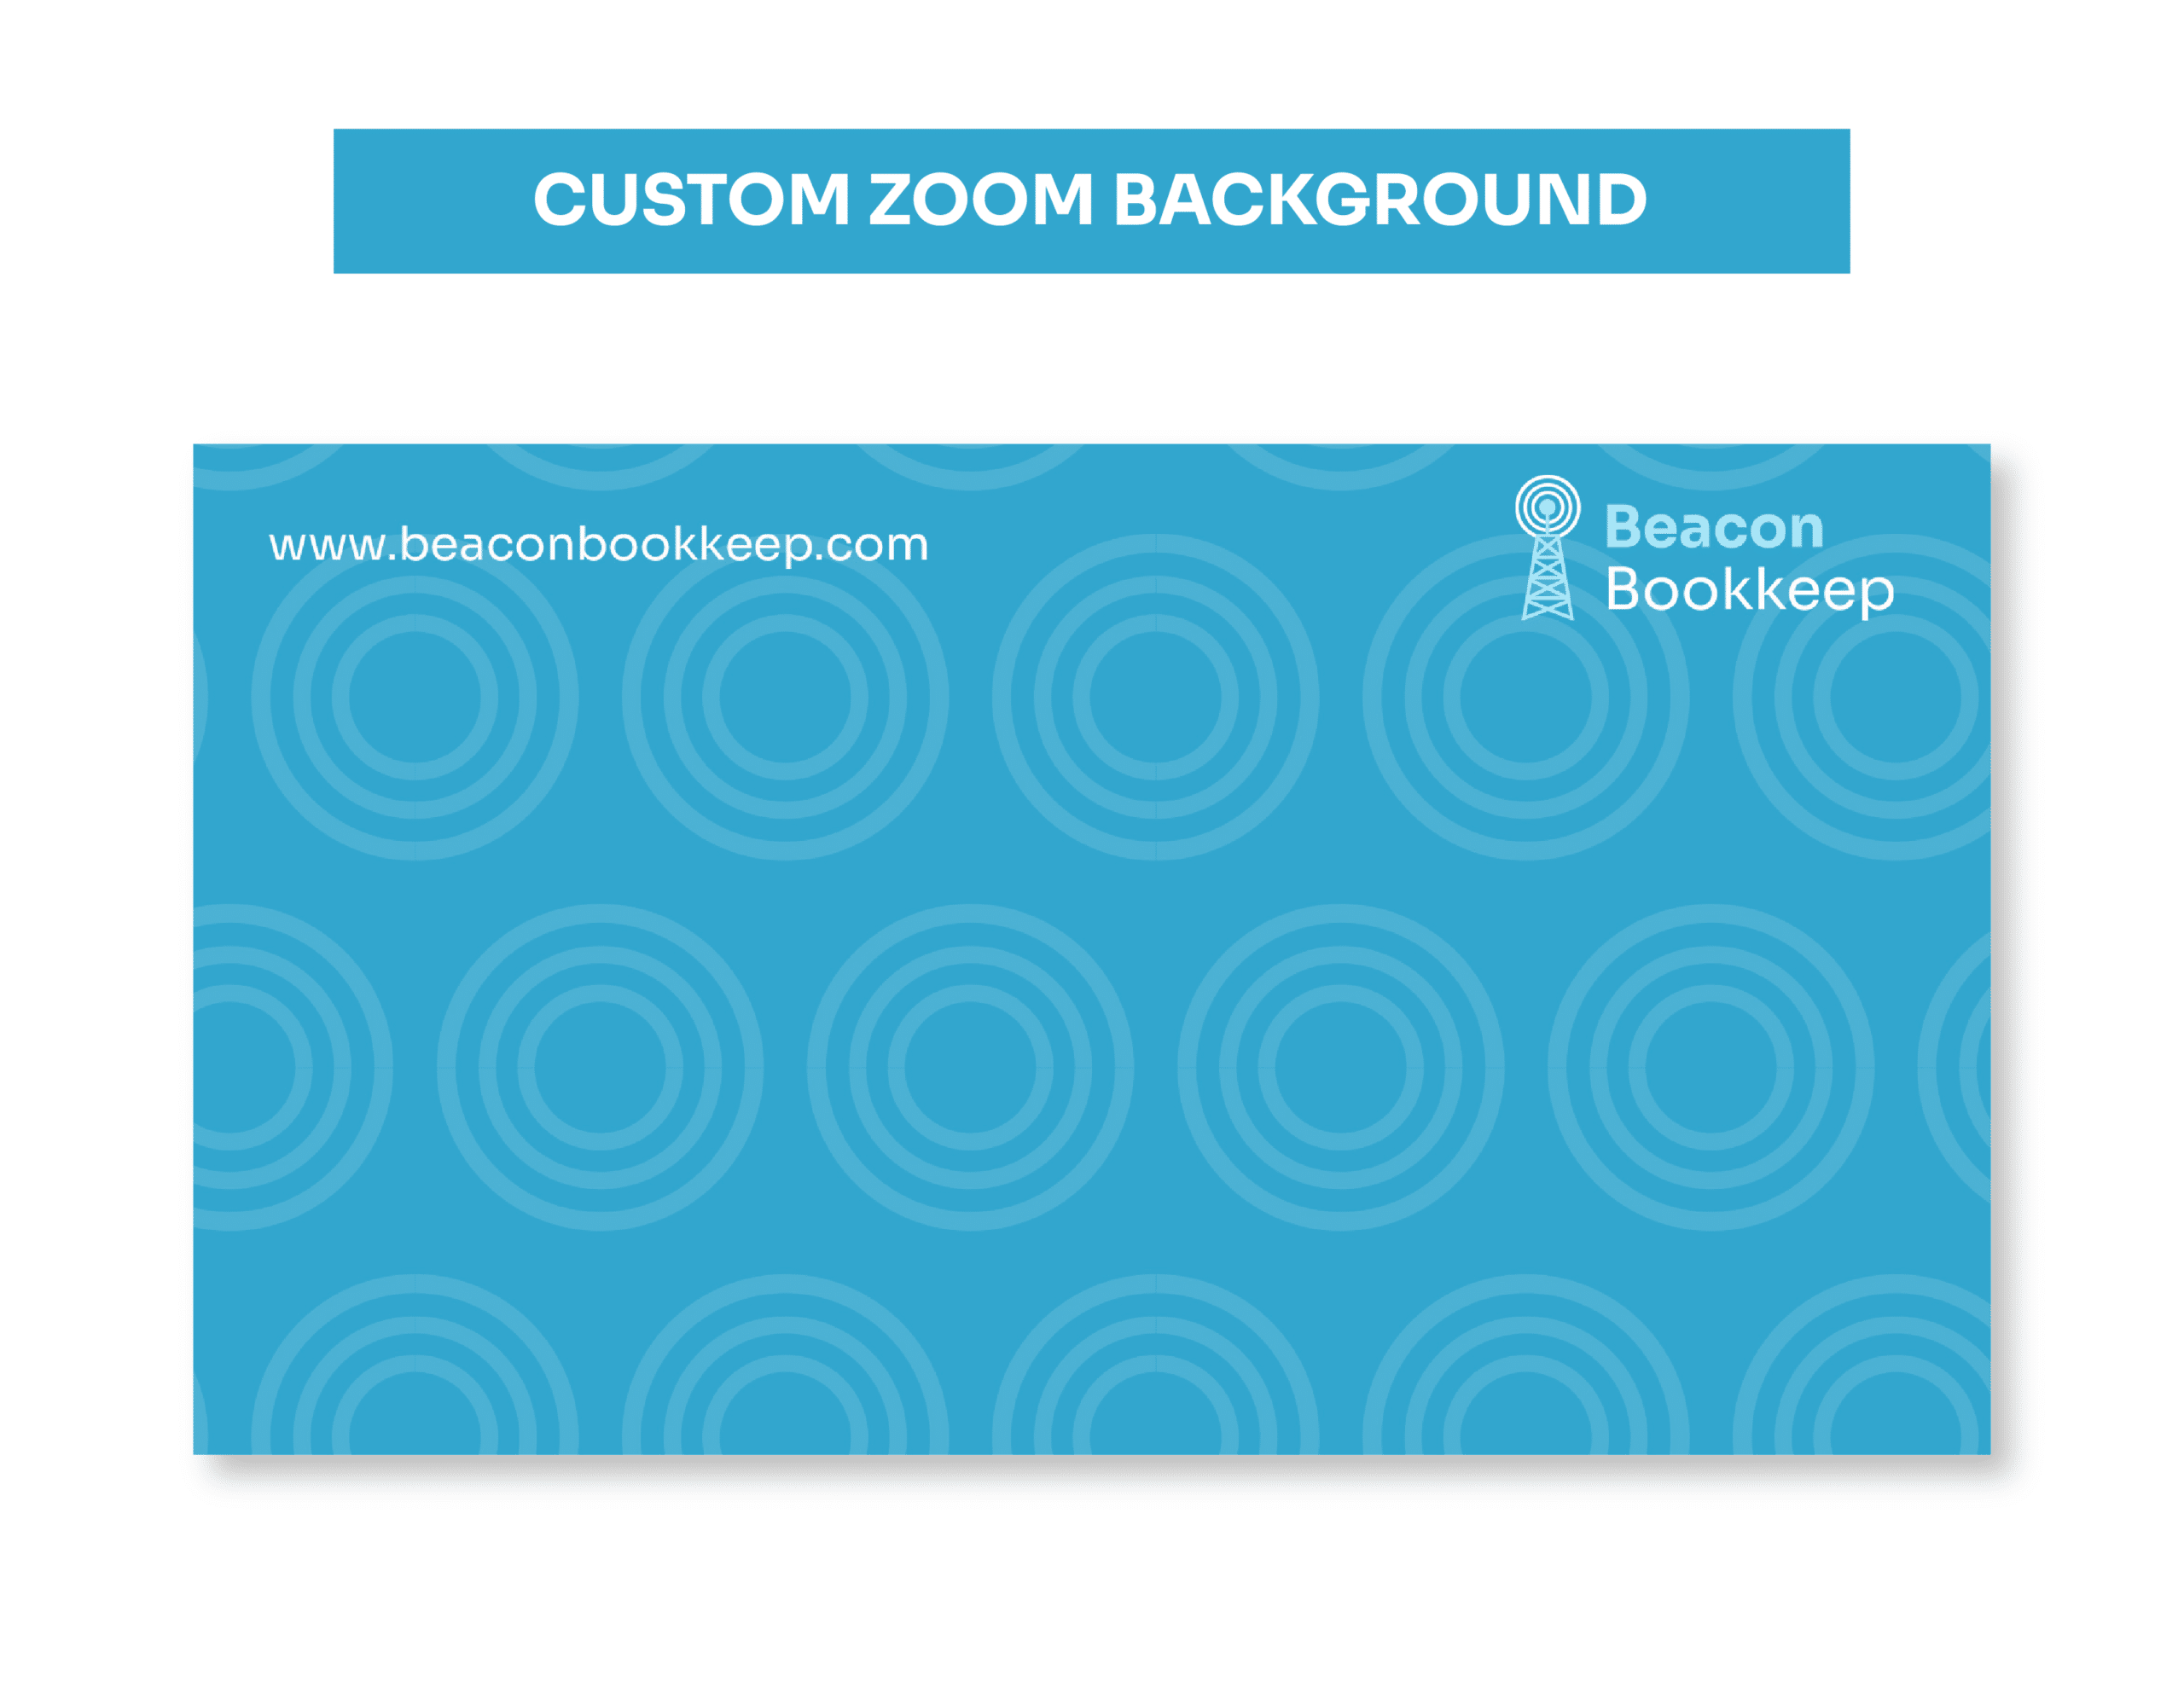 07BeaconBookkeep_Land_Showcase_Custom Zoom Background